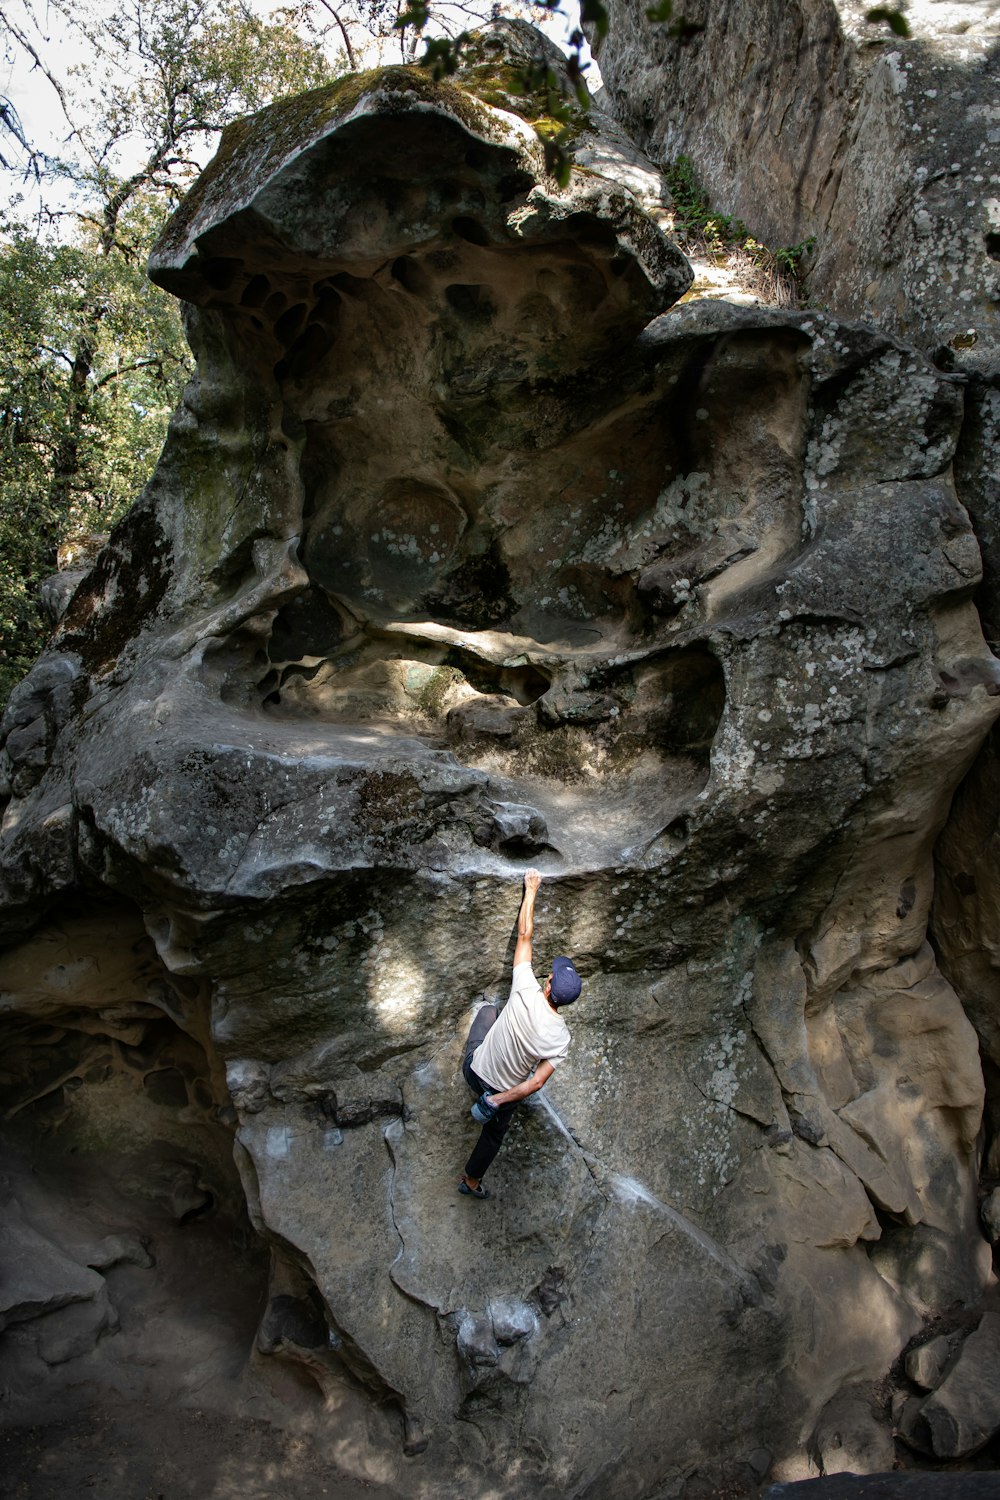 a person climbing a rock wall